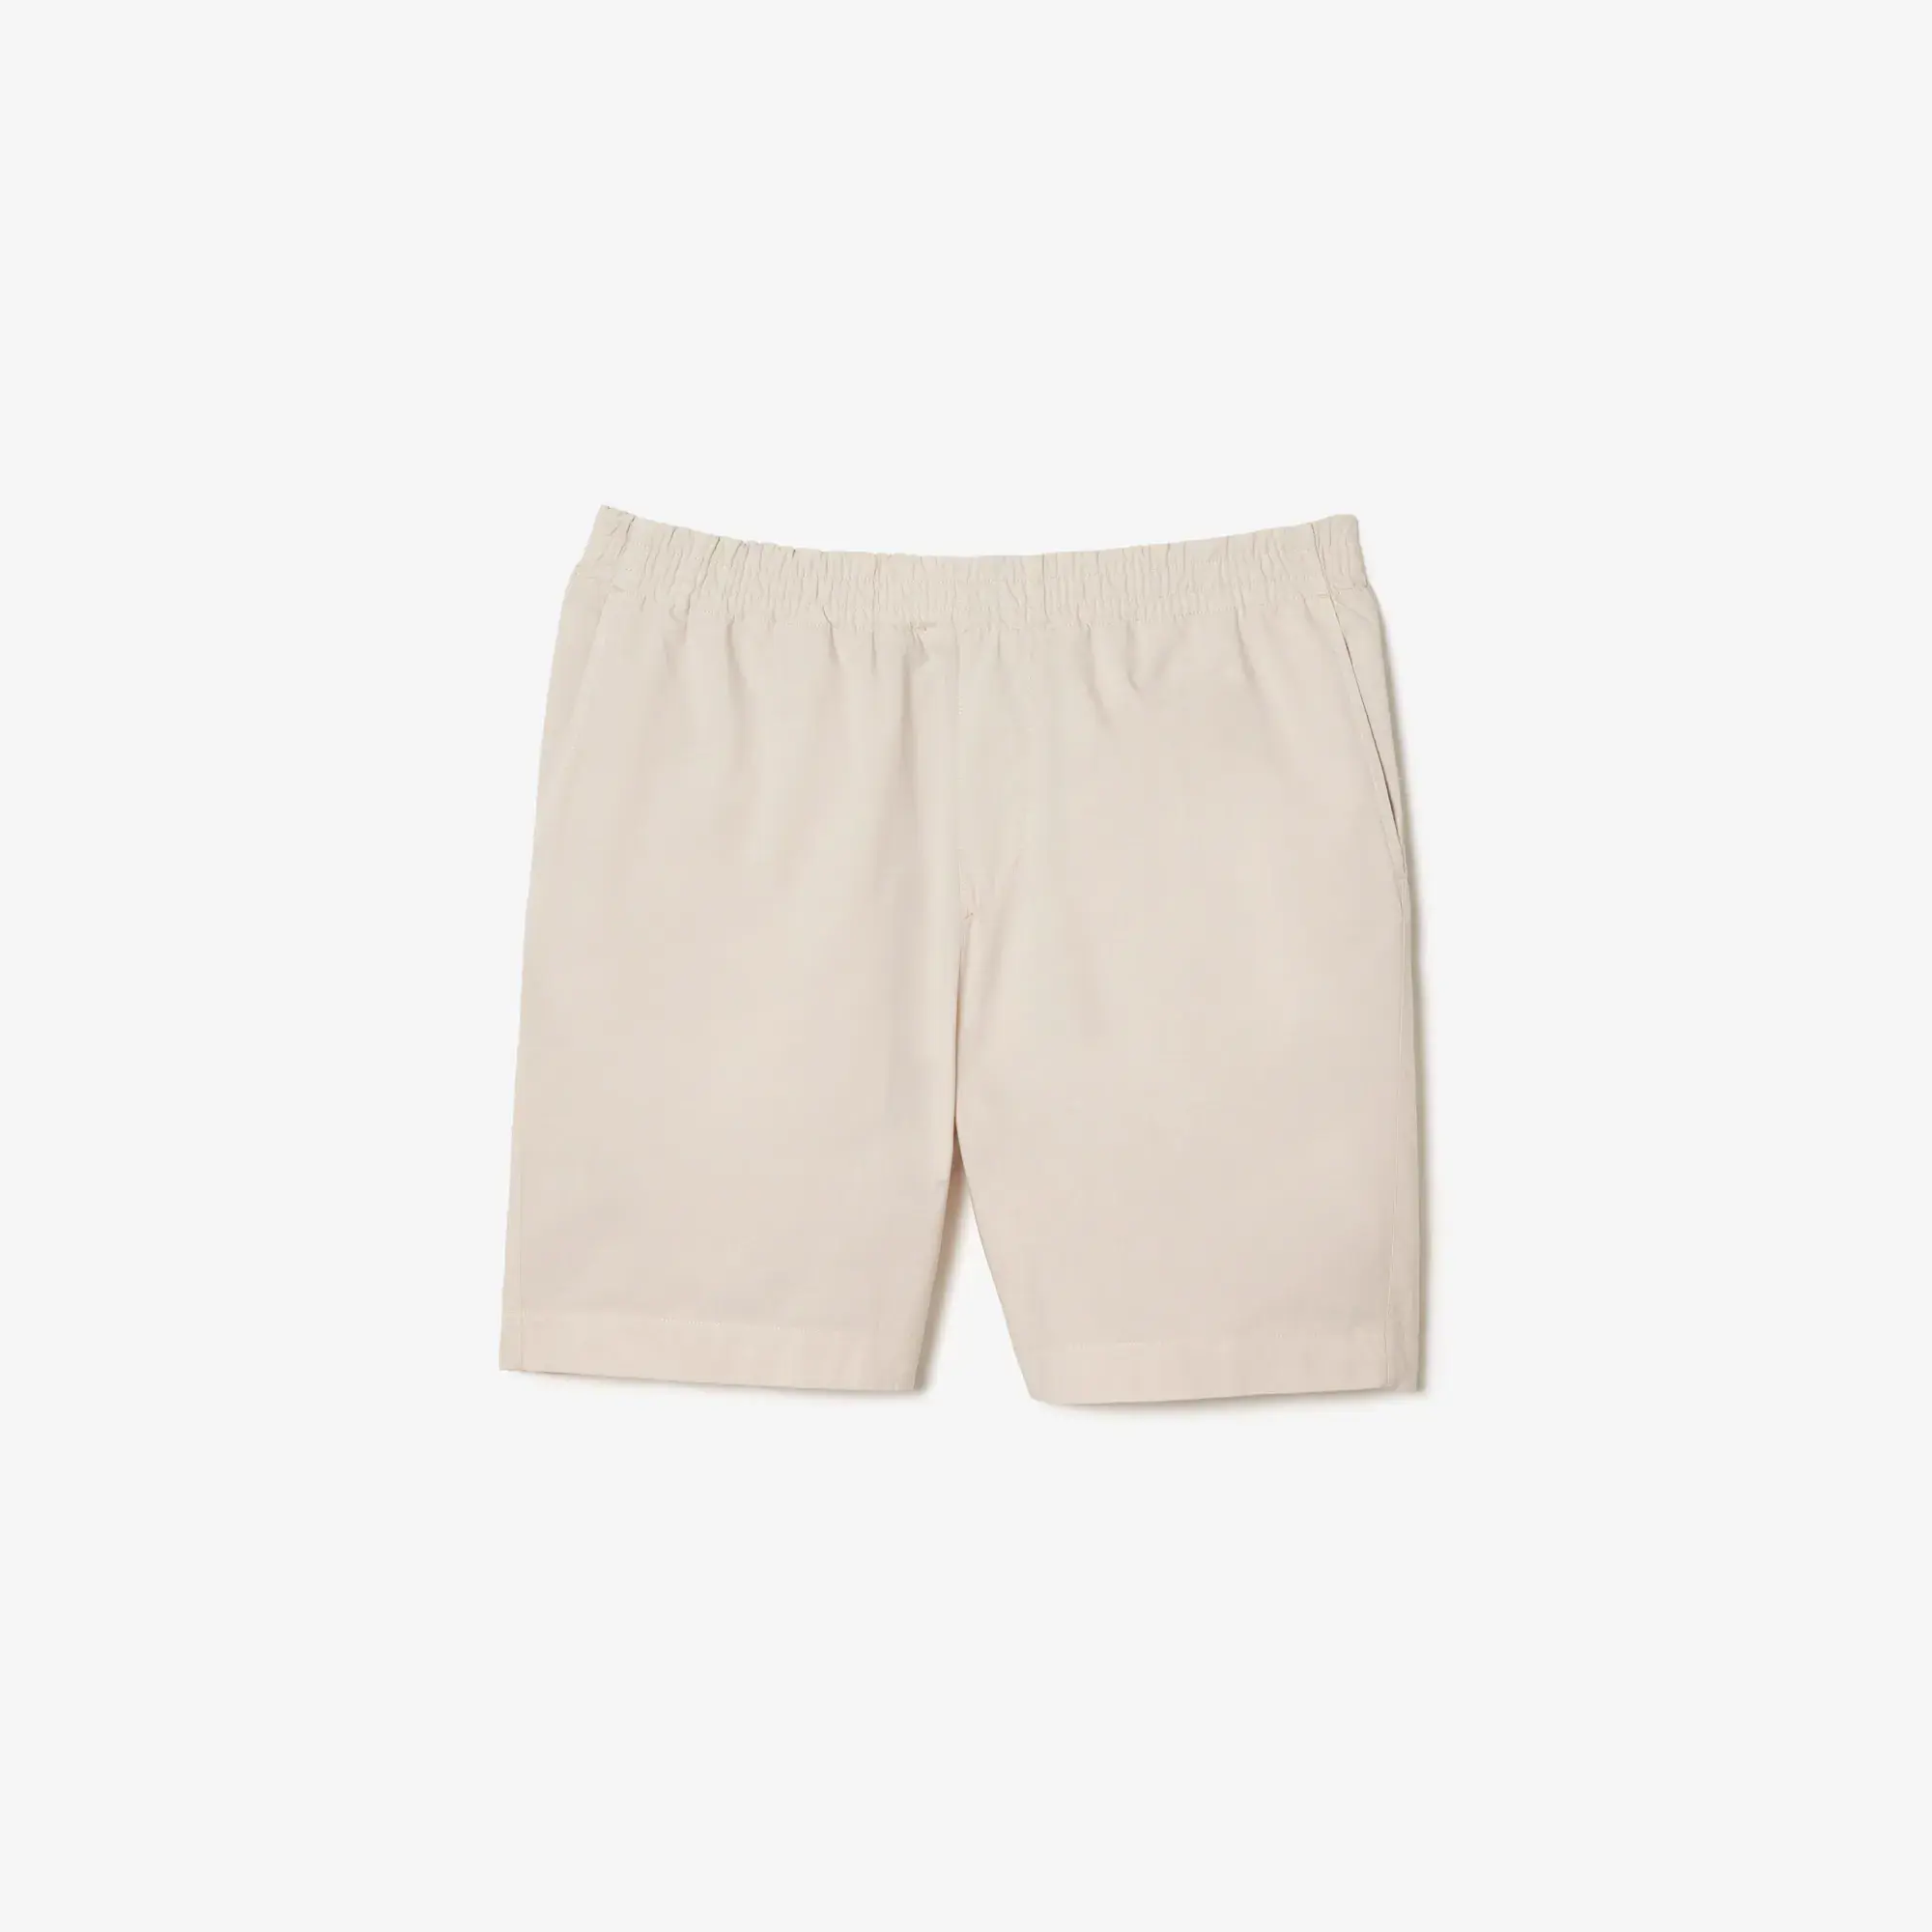 Lacoste Men’s Organic Cotton Shorts. 2